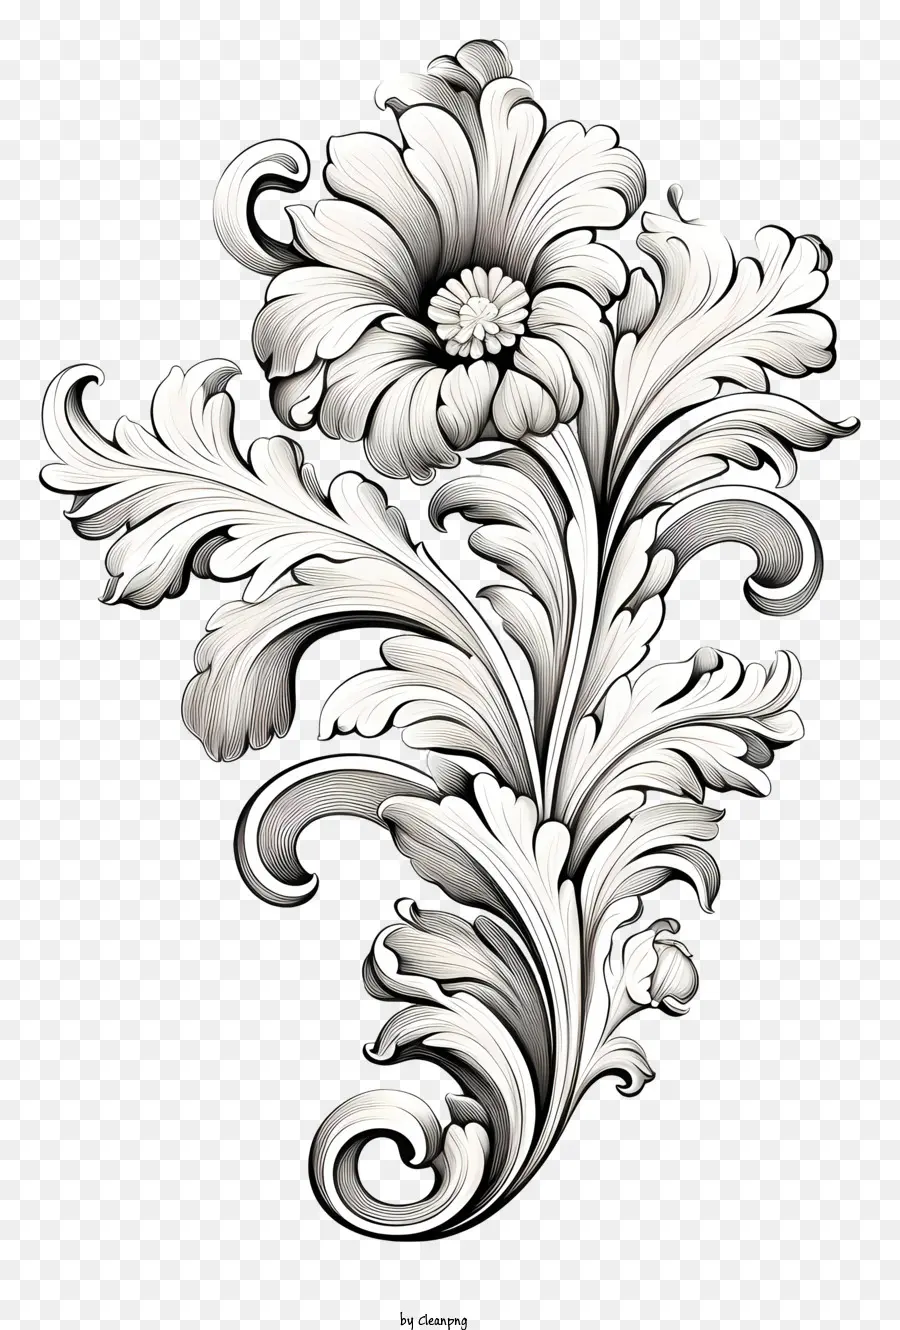 florales Design - Schwarz -Weiß -Blumendesign mit komplizierten Details